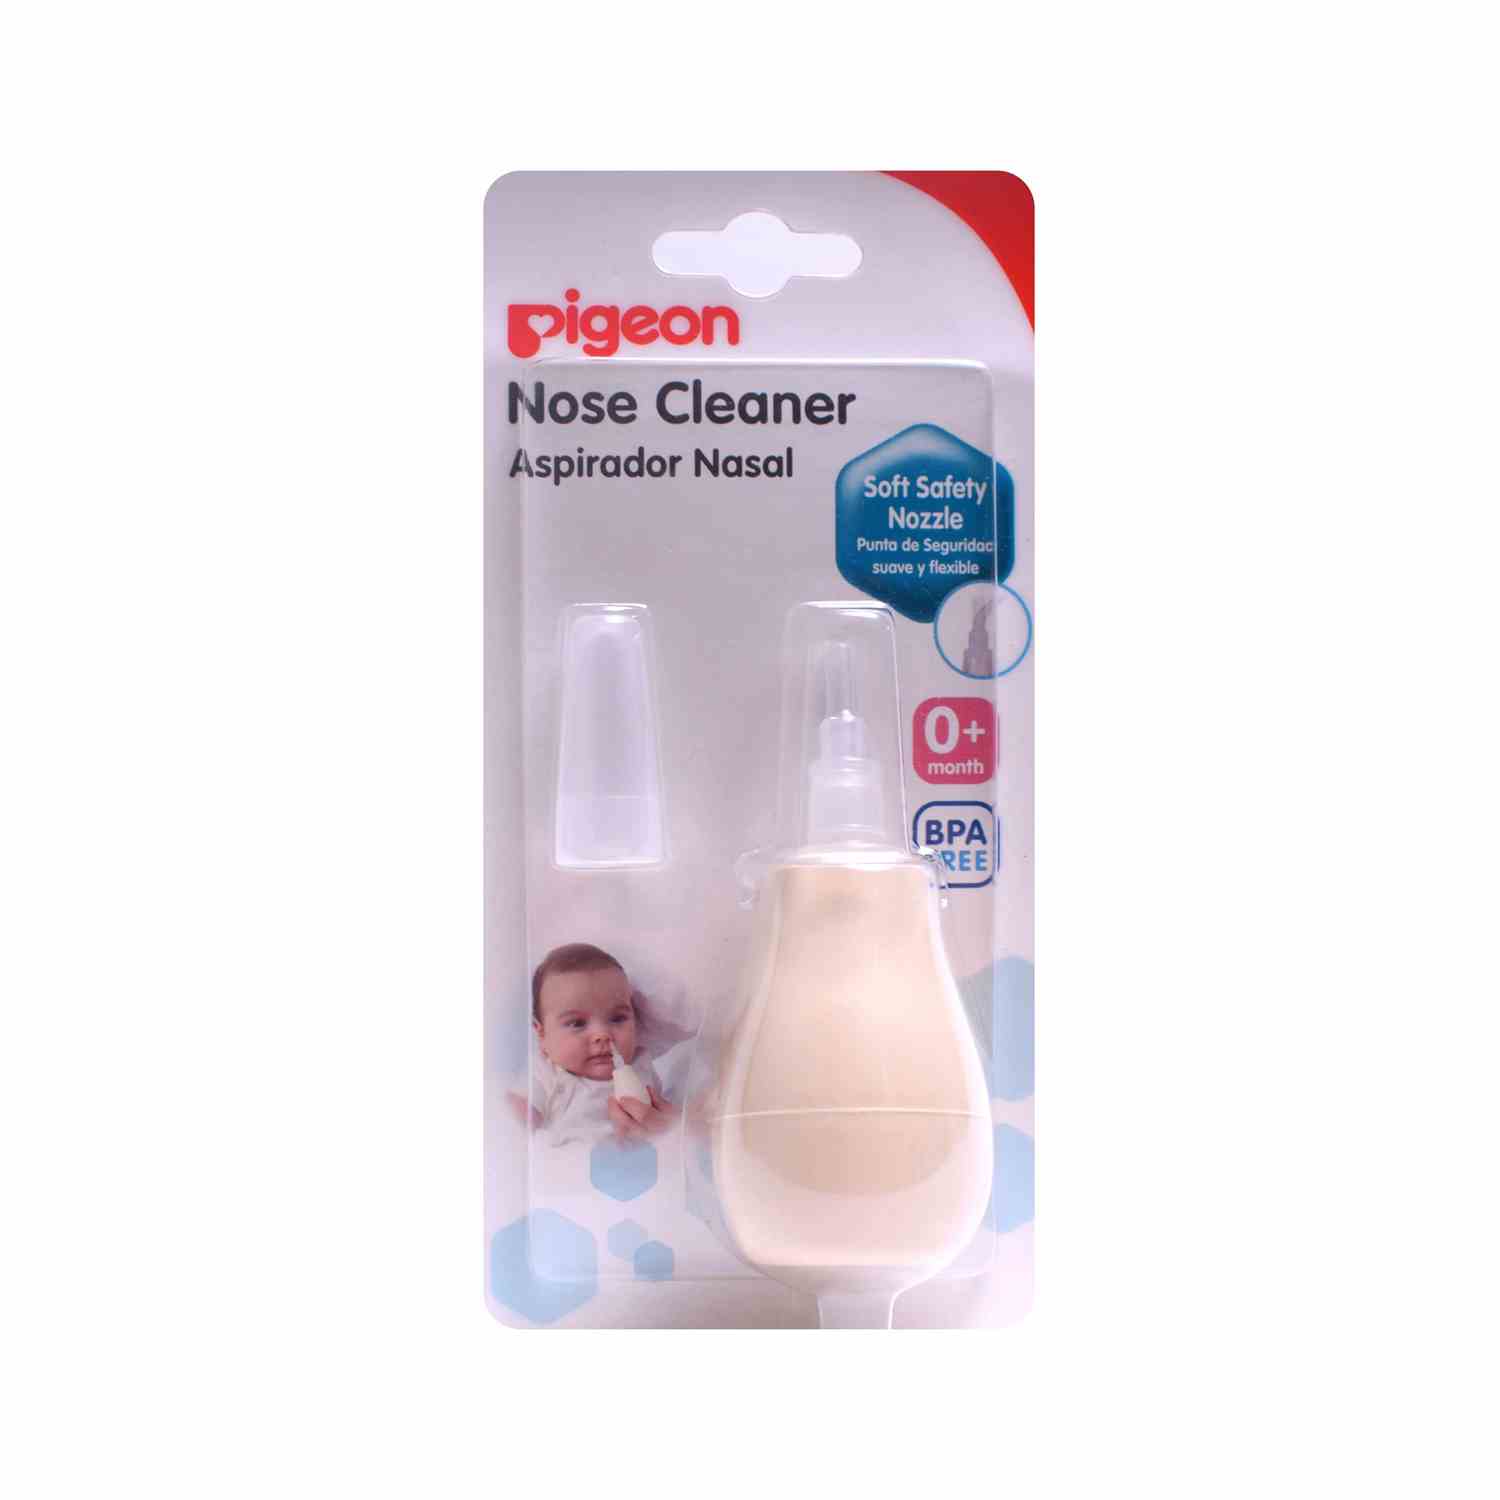 PIGEON Nose Cleaner 0+m Age, Cream